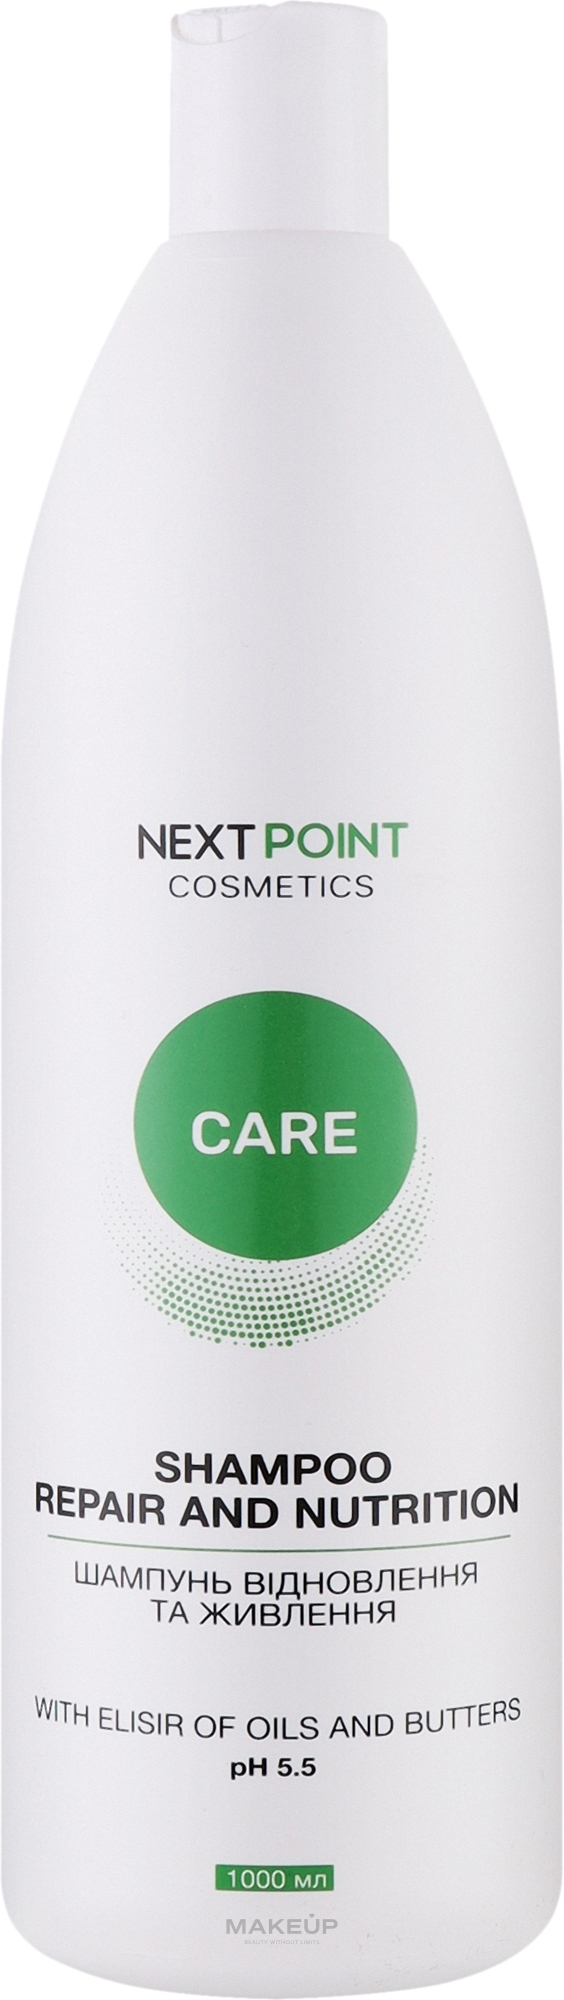 Шампунь для волос "Восстановление и питание" - Nextpoint Cosmetics Repair and Nutrition Shampoo — фото 1000ml